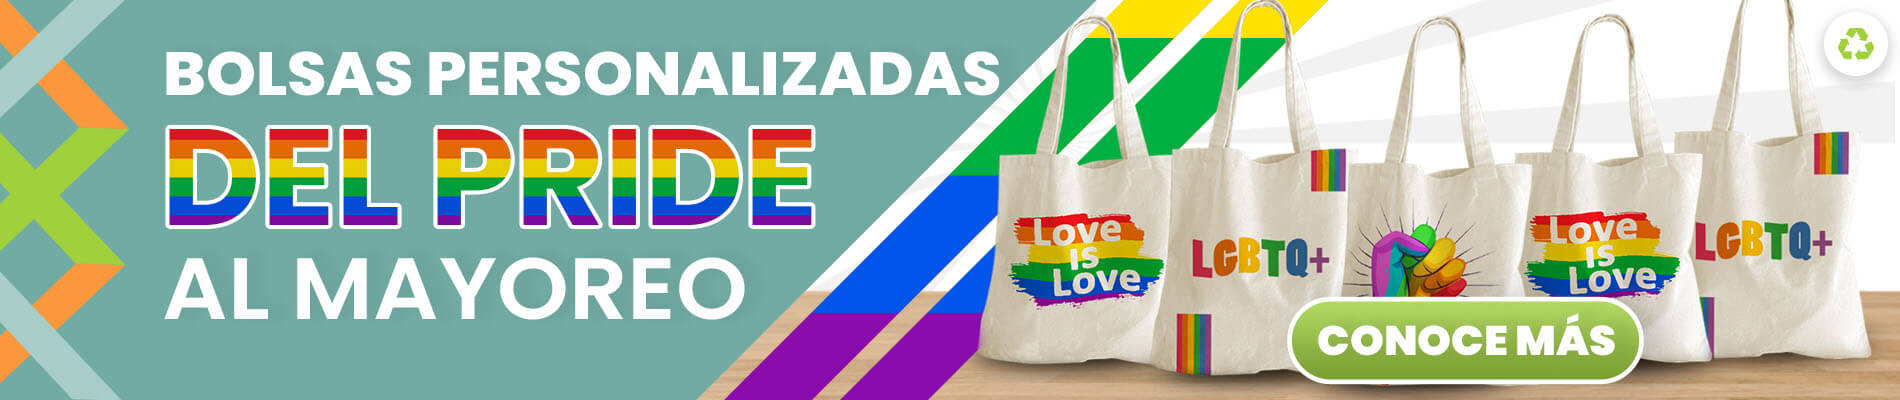 Banner Bolsas Pride Personalizadas